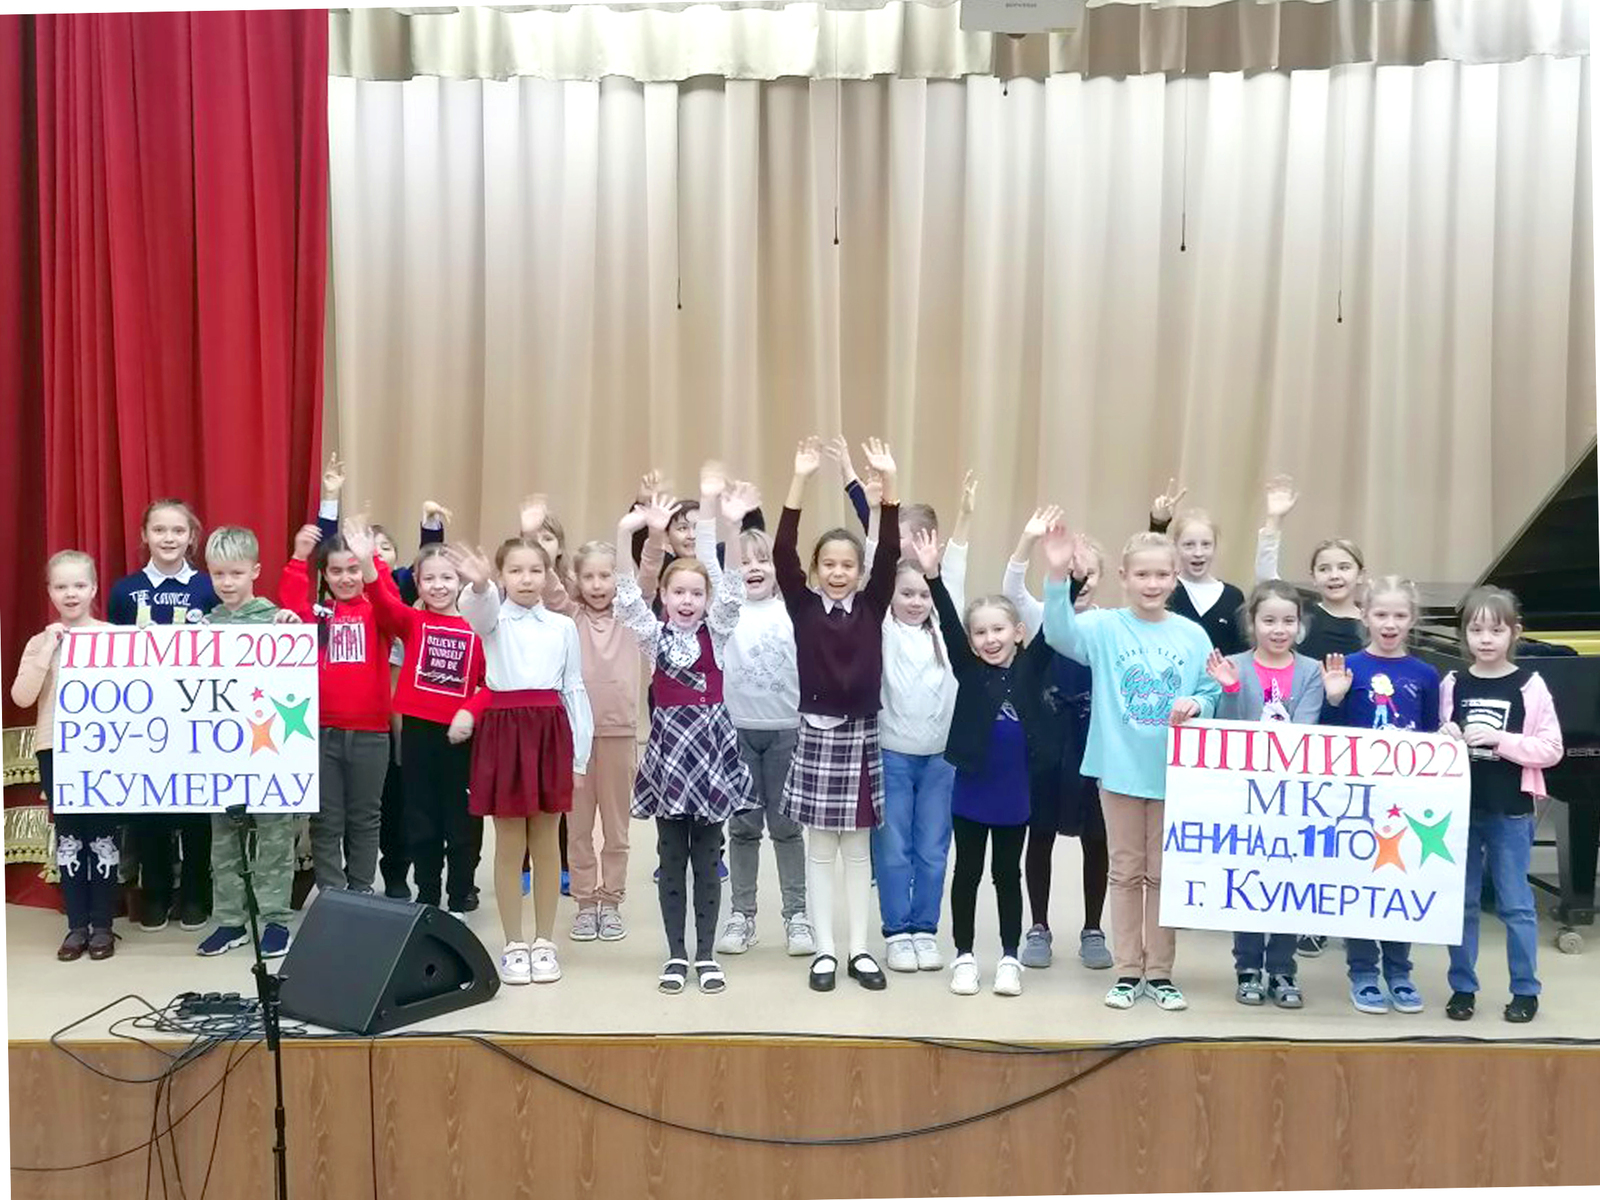 Концерт в поддержку ППМИ-2022: ученики музыкальной школы уверены в победе!